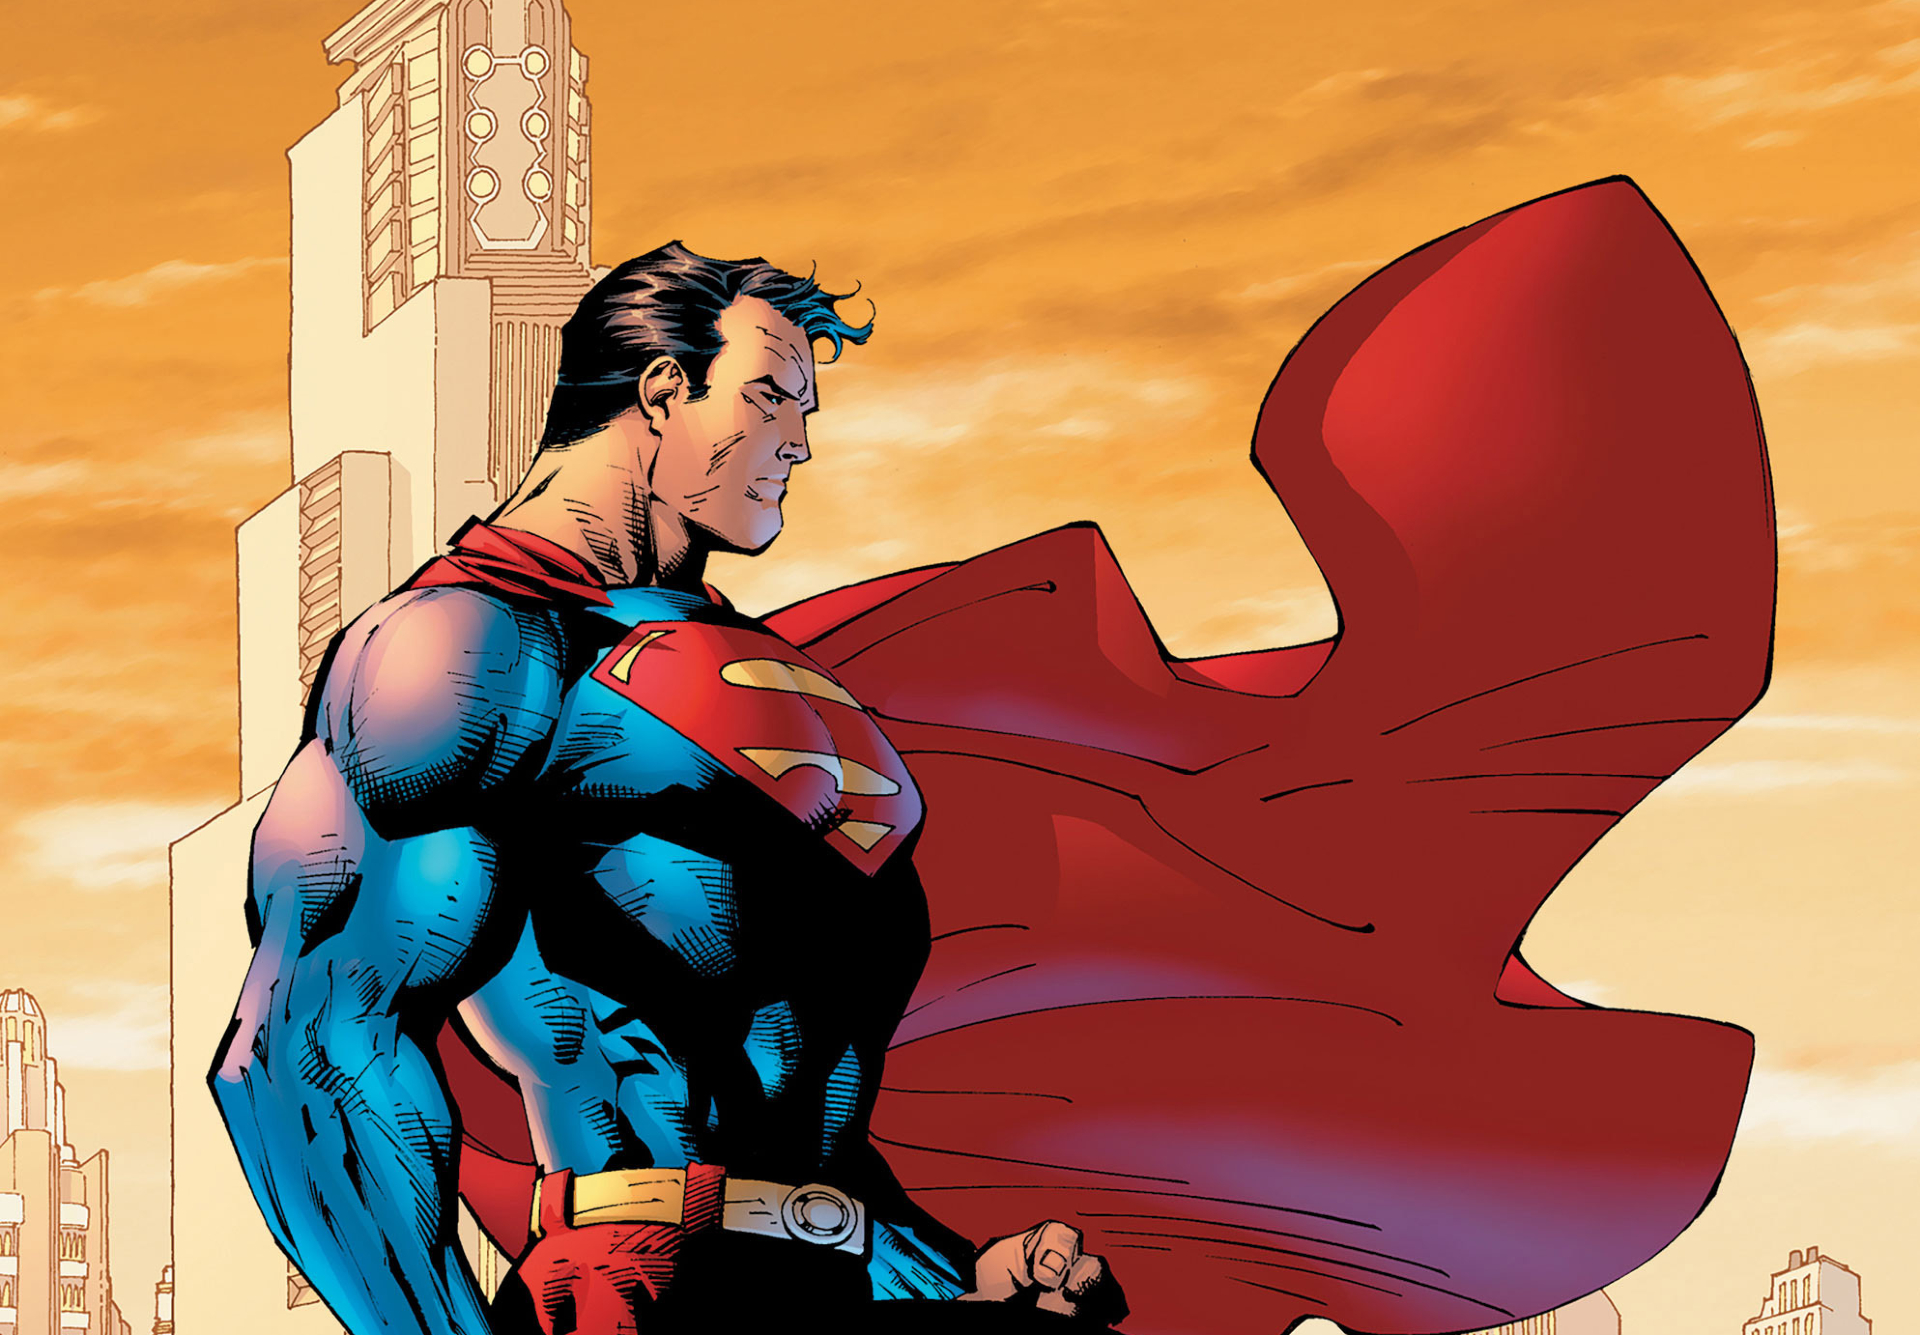 Action Comics เล่มที่ 1 การปรากฎตัวของ Superman กลายเป็นเล่มที่มีมูลค่าสูงถึง 220 ล้านบาท